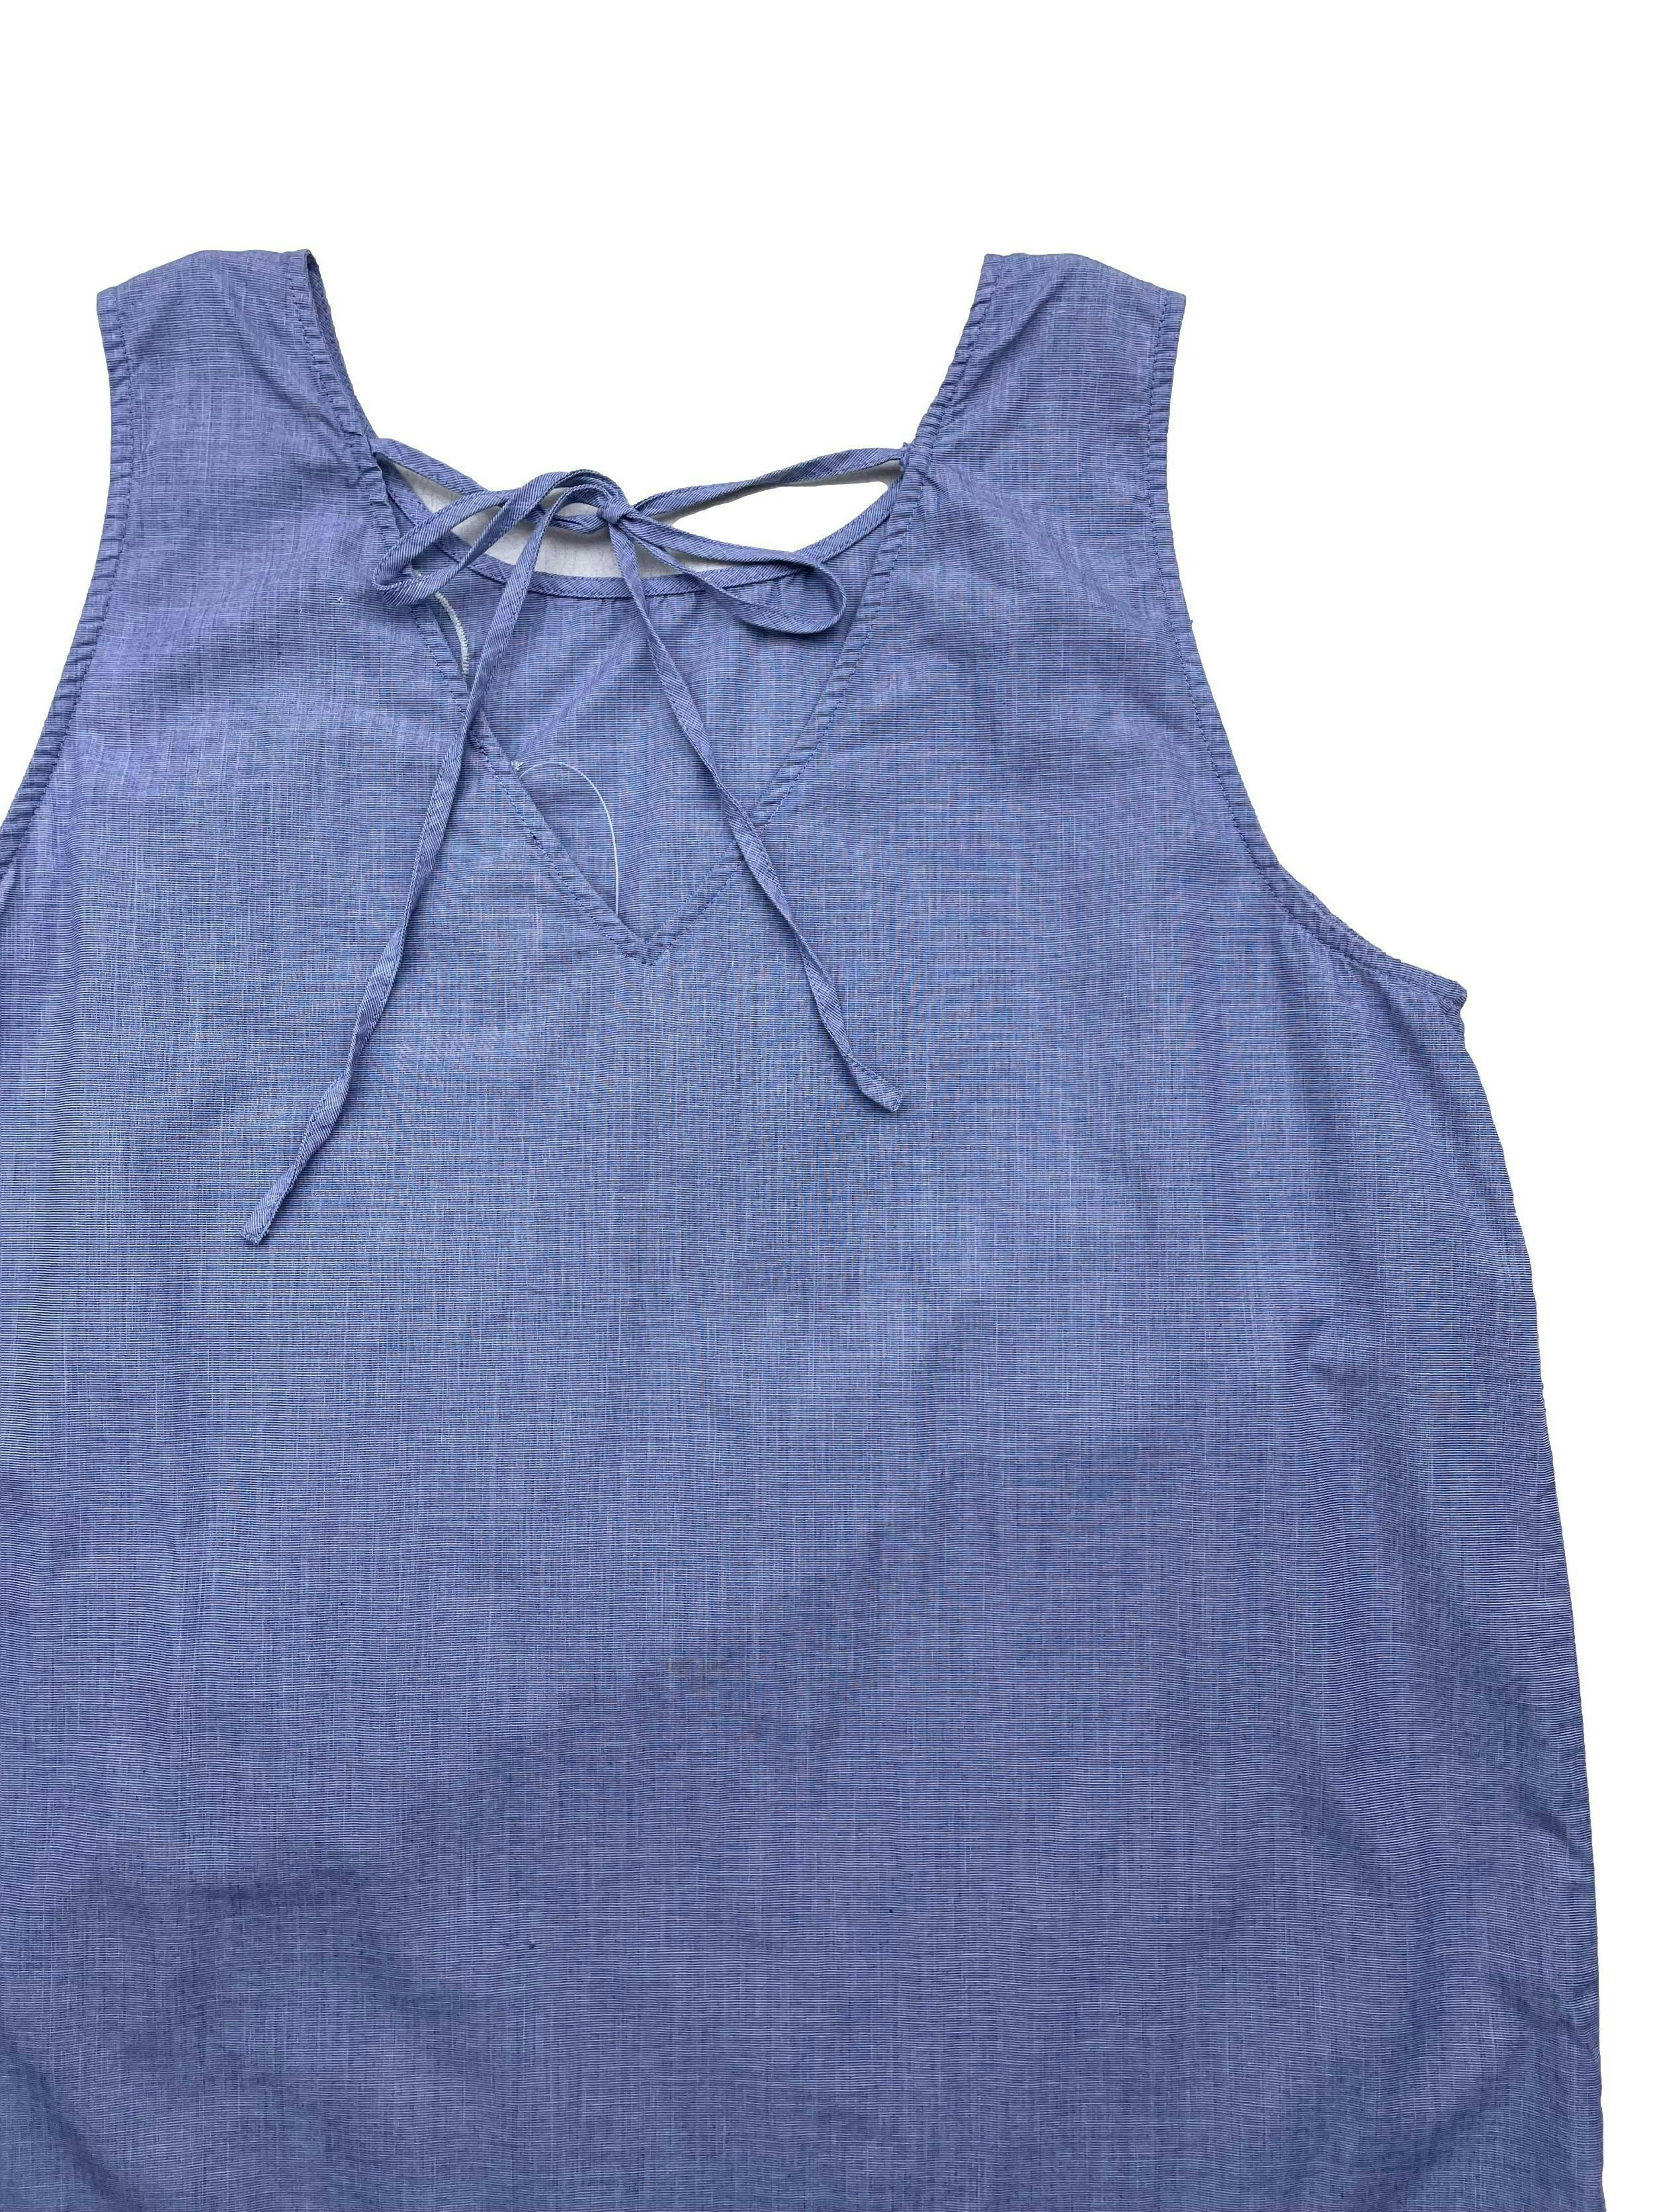 Blusa Ann Taylor de algodón camisa jaspeado azul y blanco, bordado de flores, se amarra en la espalda. Busto 100cm Largo 60cm